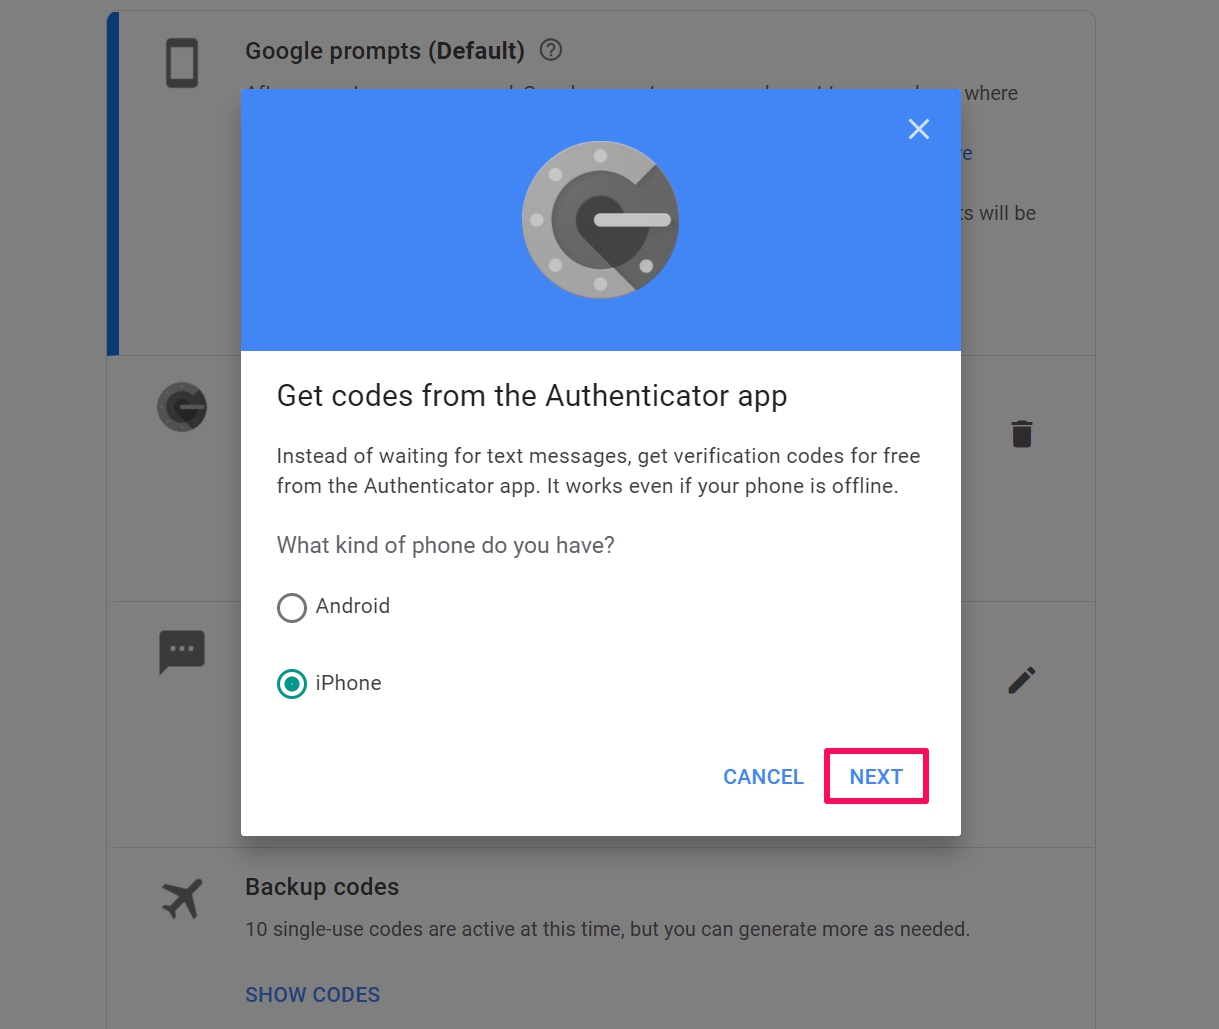 google authenticator app new phone